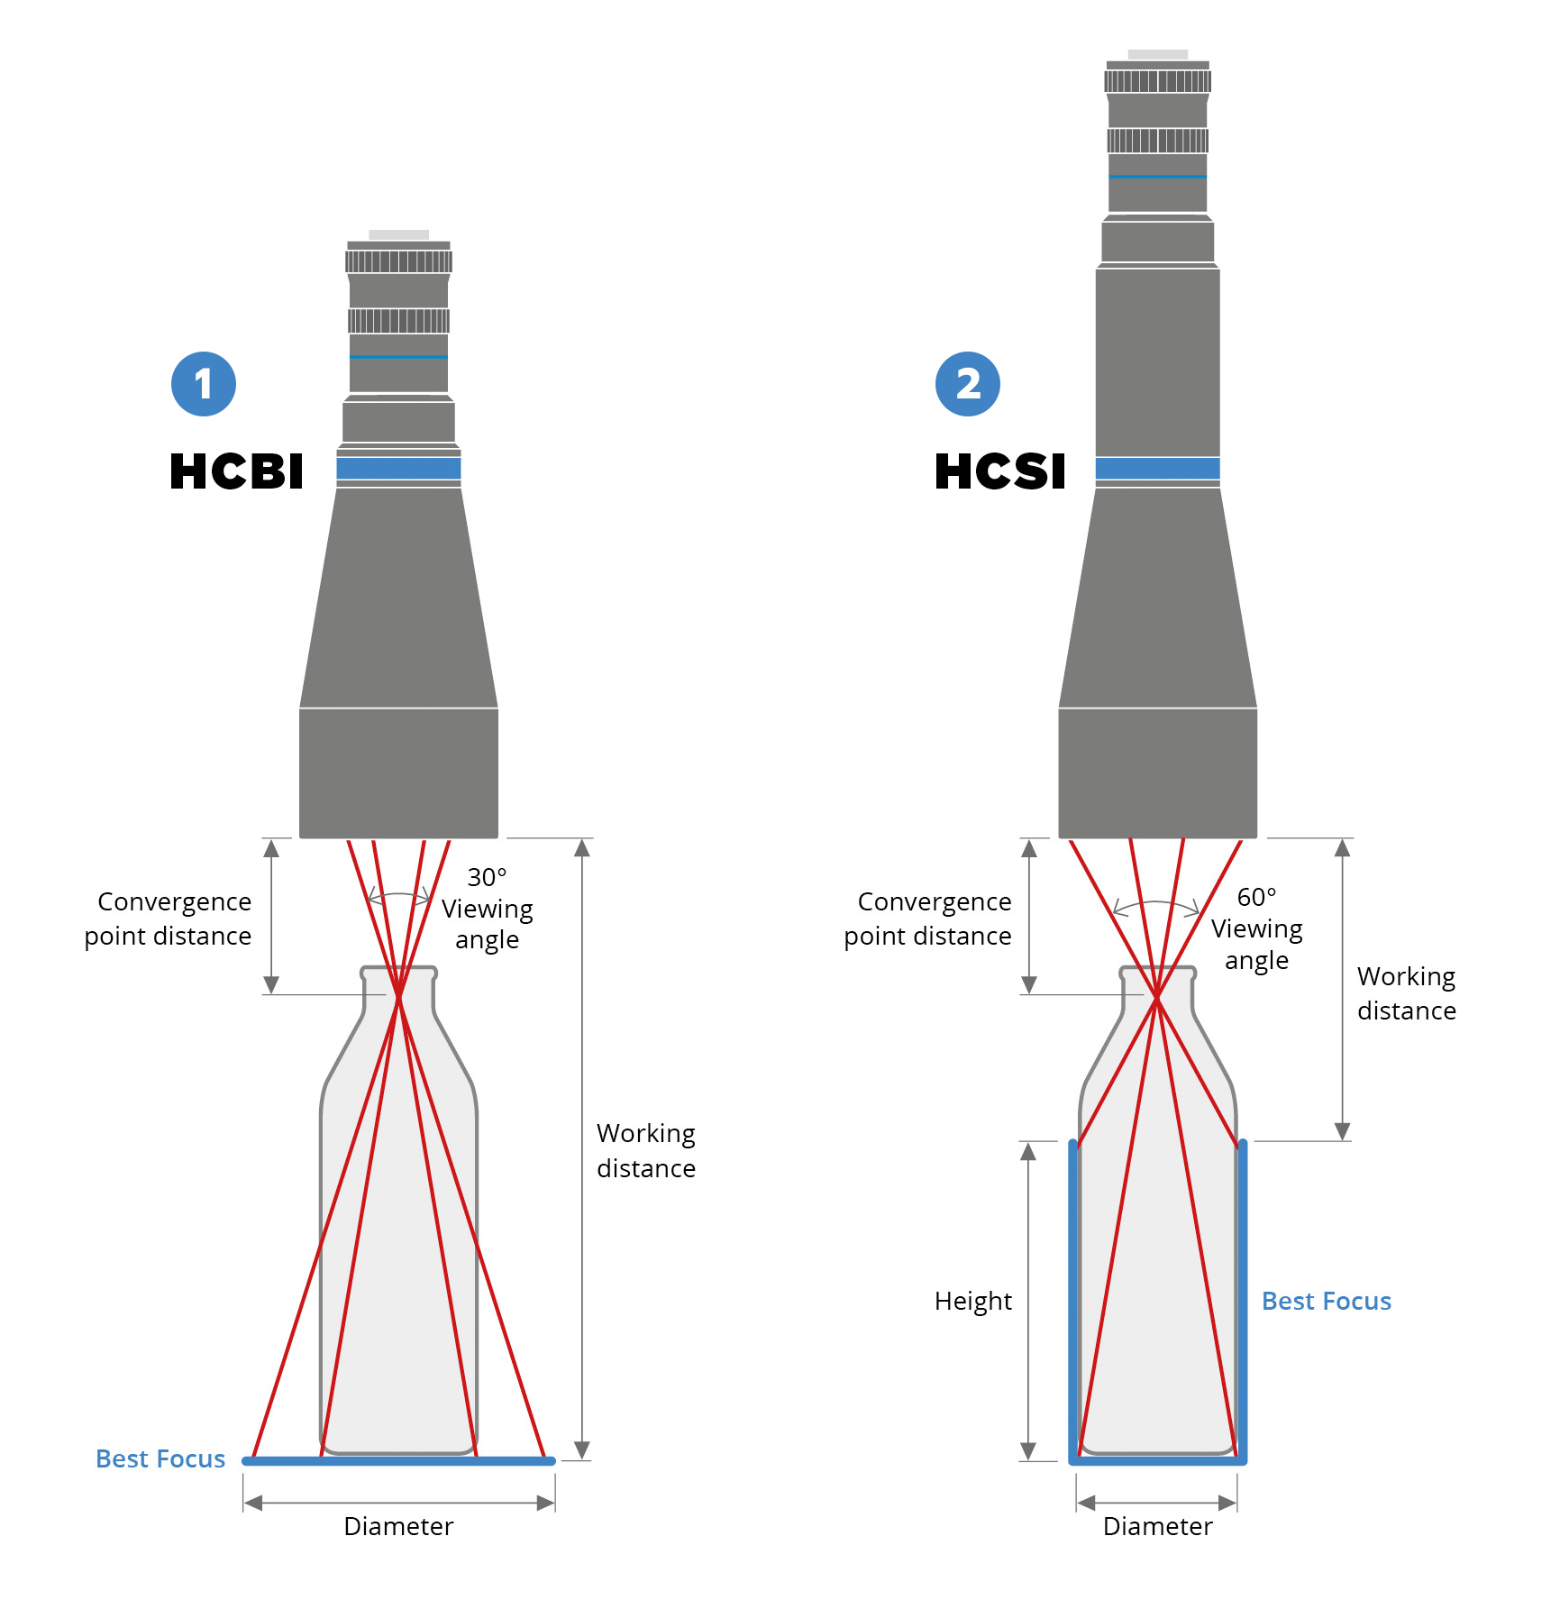 1 - HCBI hyperzentrische Objektive für die innere Bodeninspektion. 2 - HCSI hyperzentrische Objektive für die Inspektion der Innenwände und des Bodens.